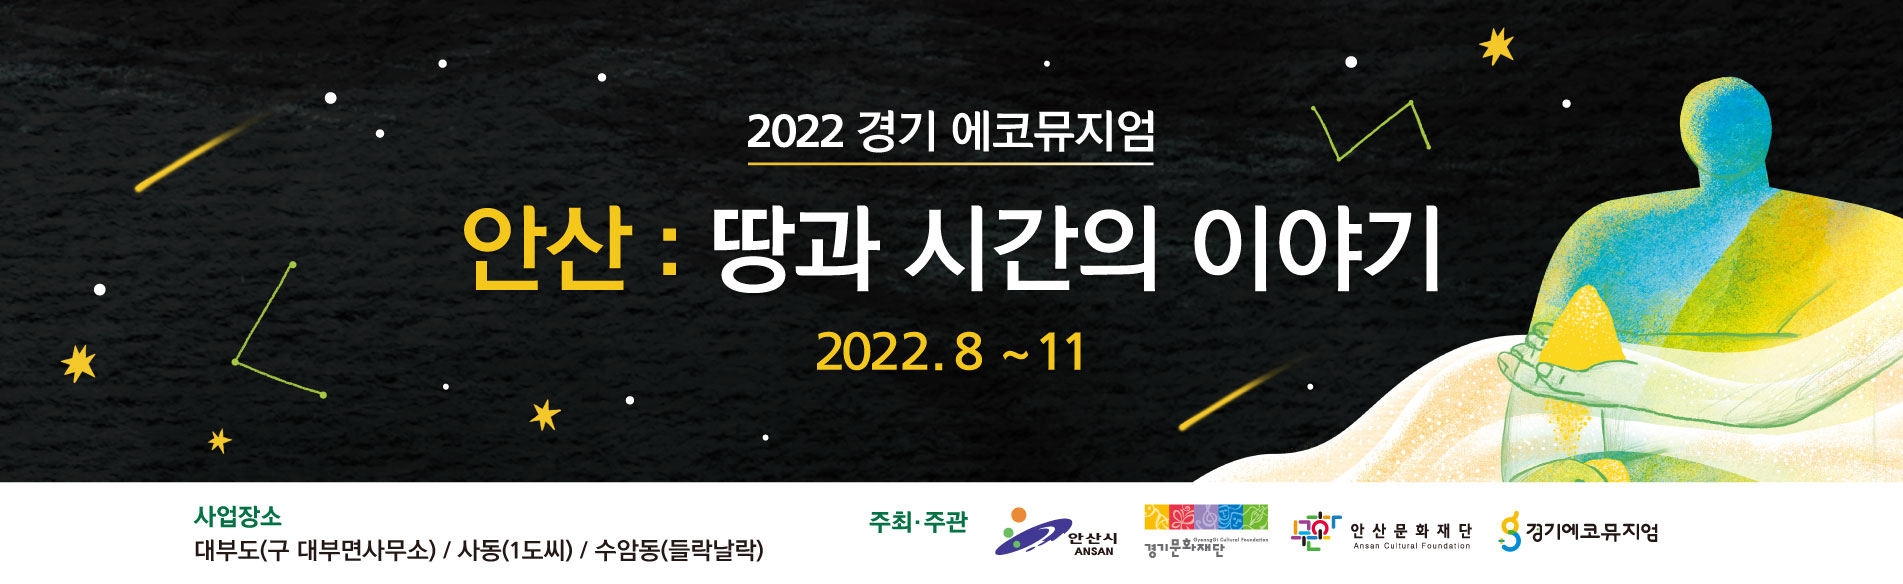 2022 경기 에코뮤지엄 <안산: 땅과 시간의 이야기>